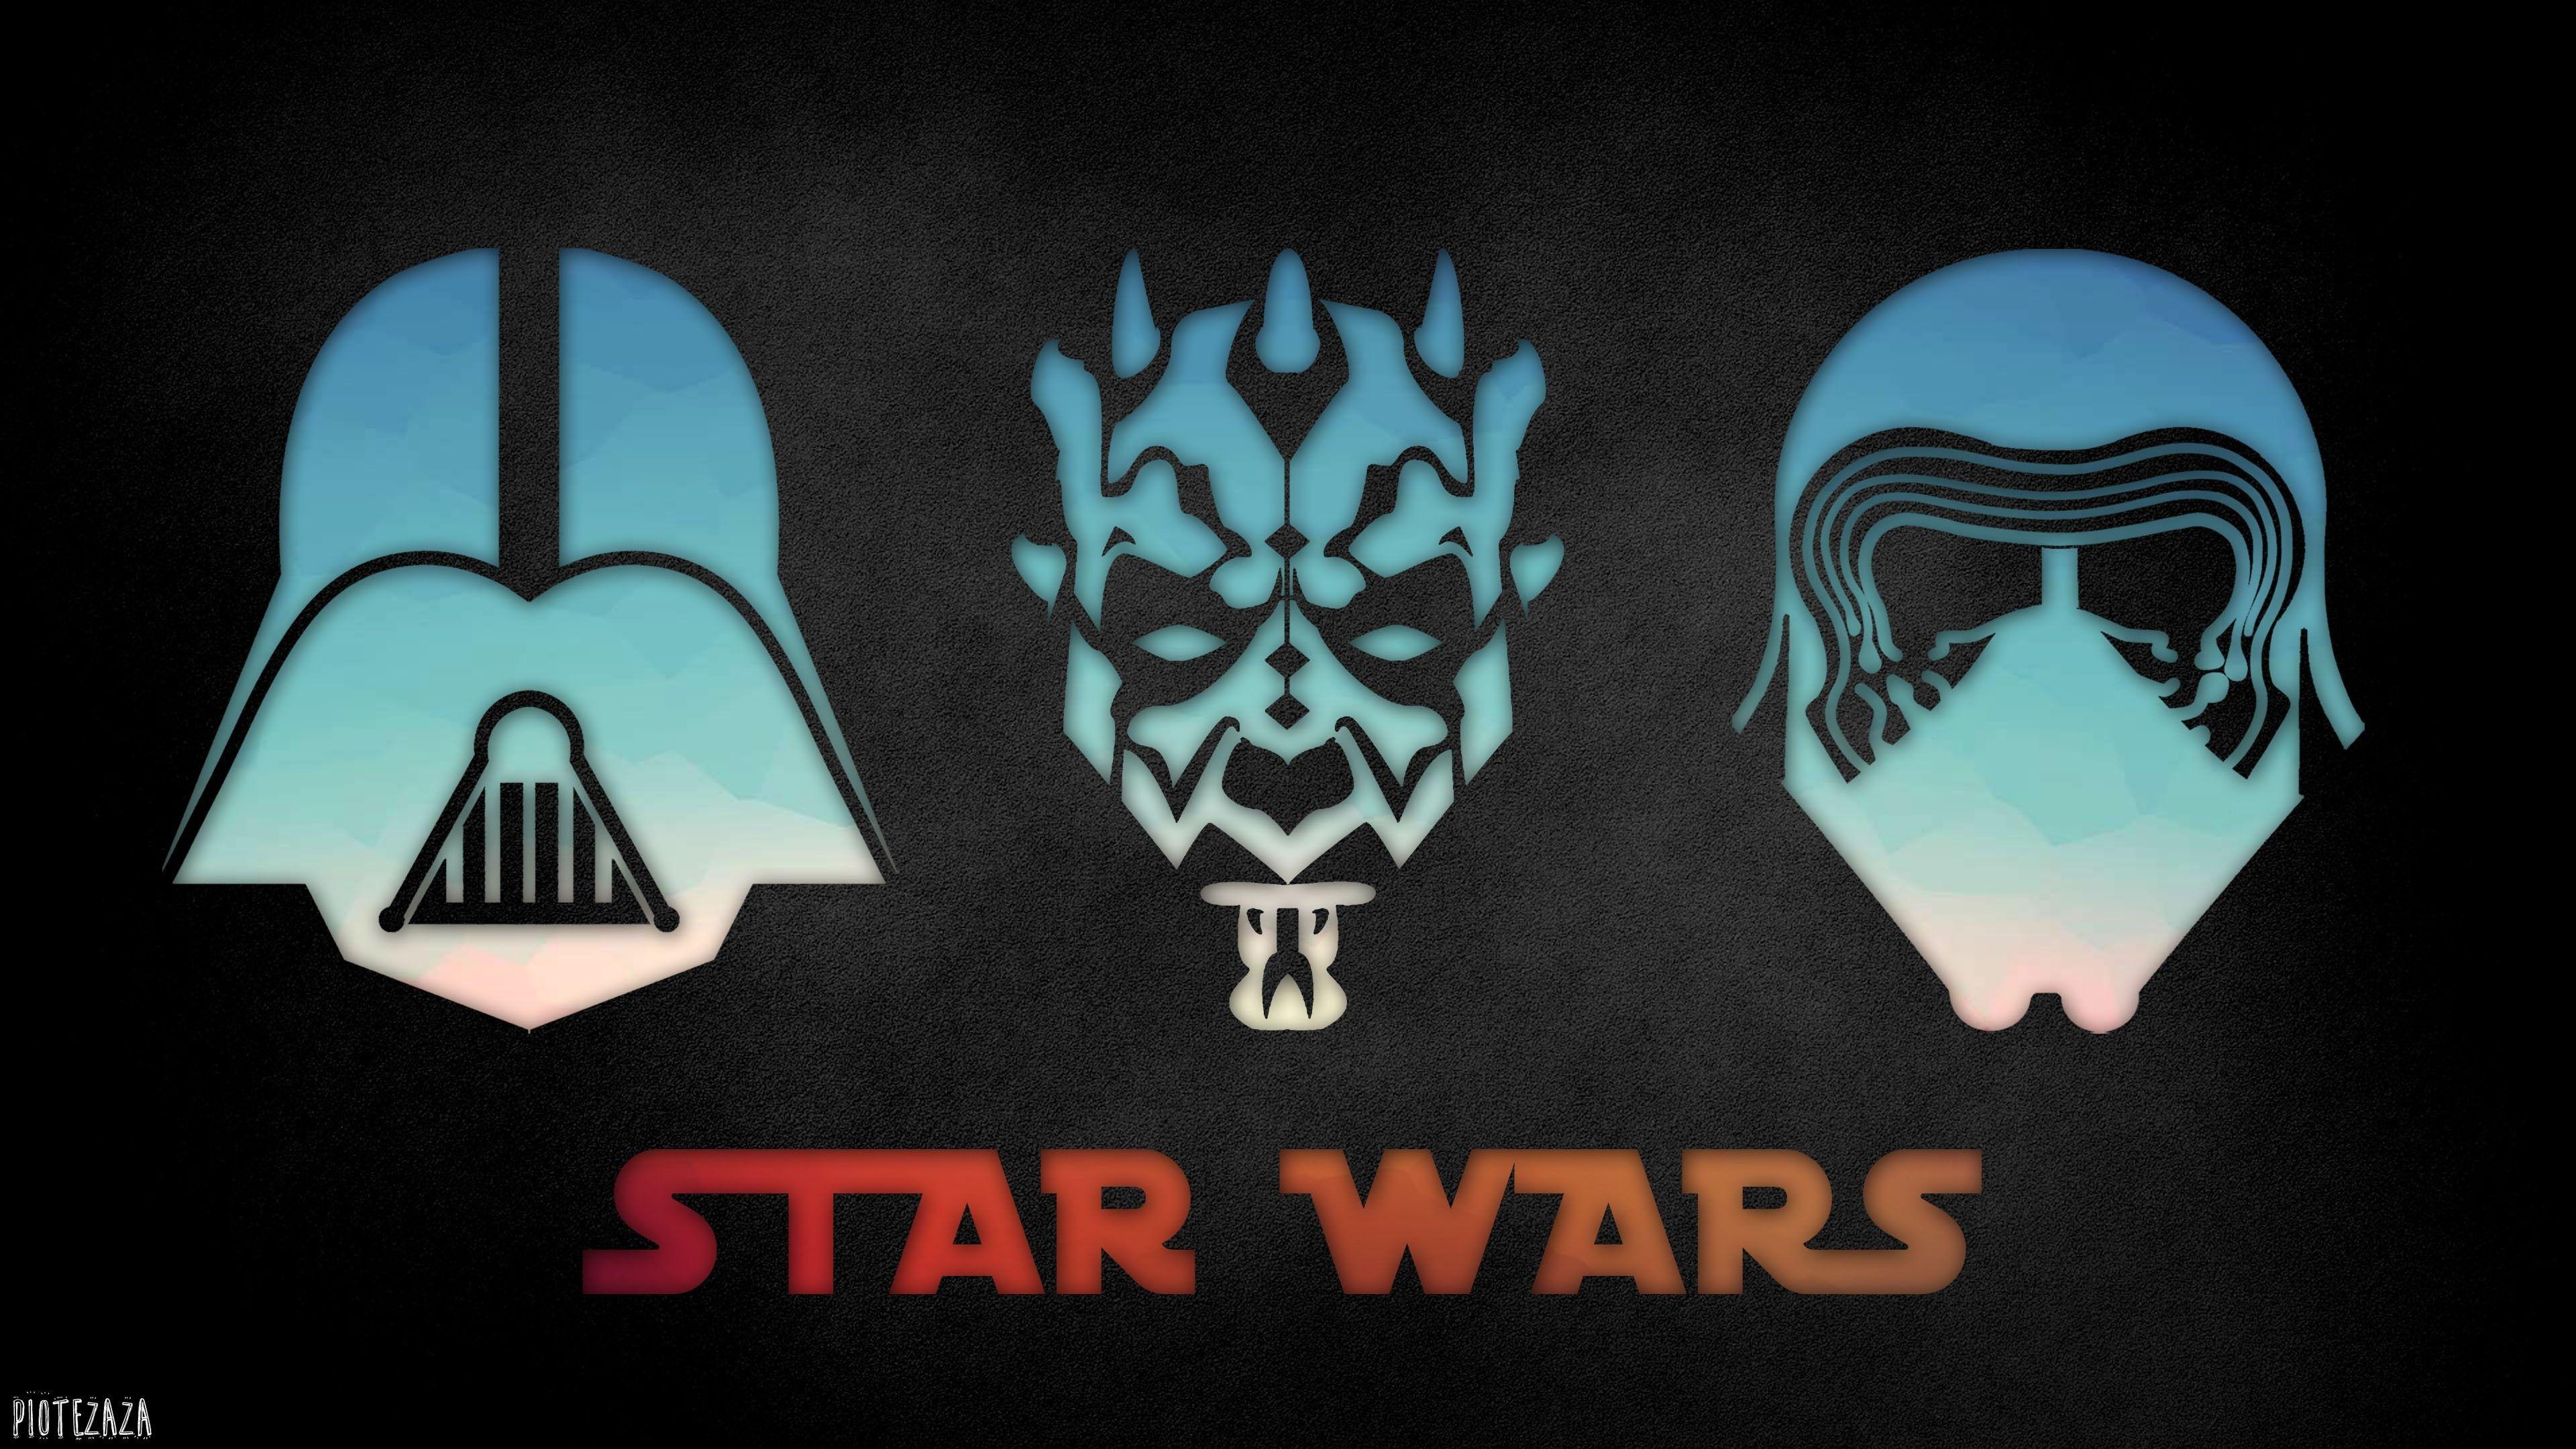 Darth Logo - Wallpaper : illustration, Star Wars, logo, Darth Vader, Kylo Ren ...